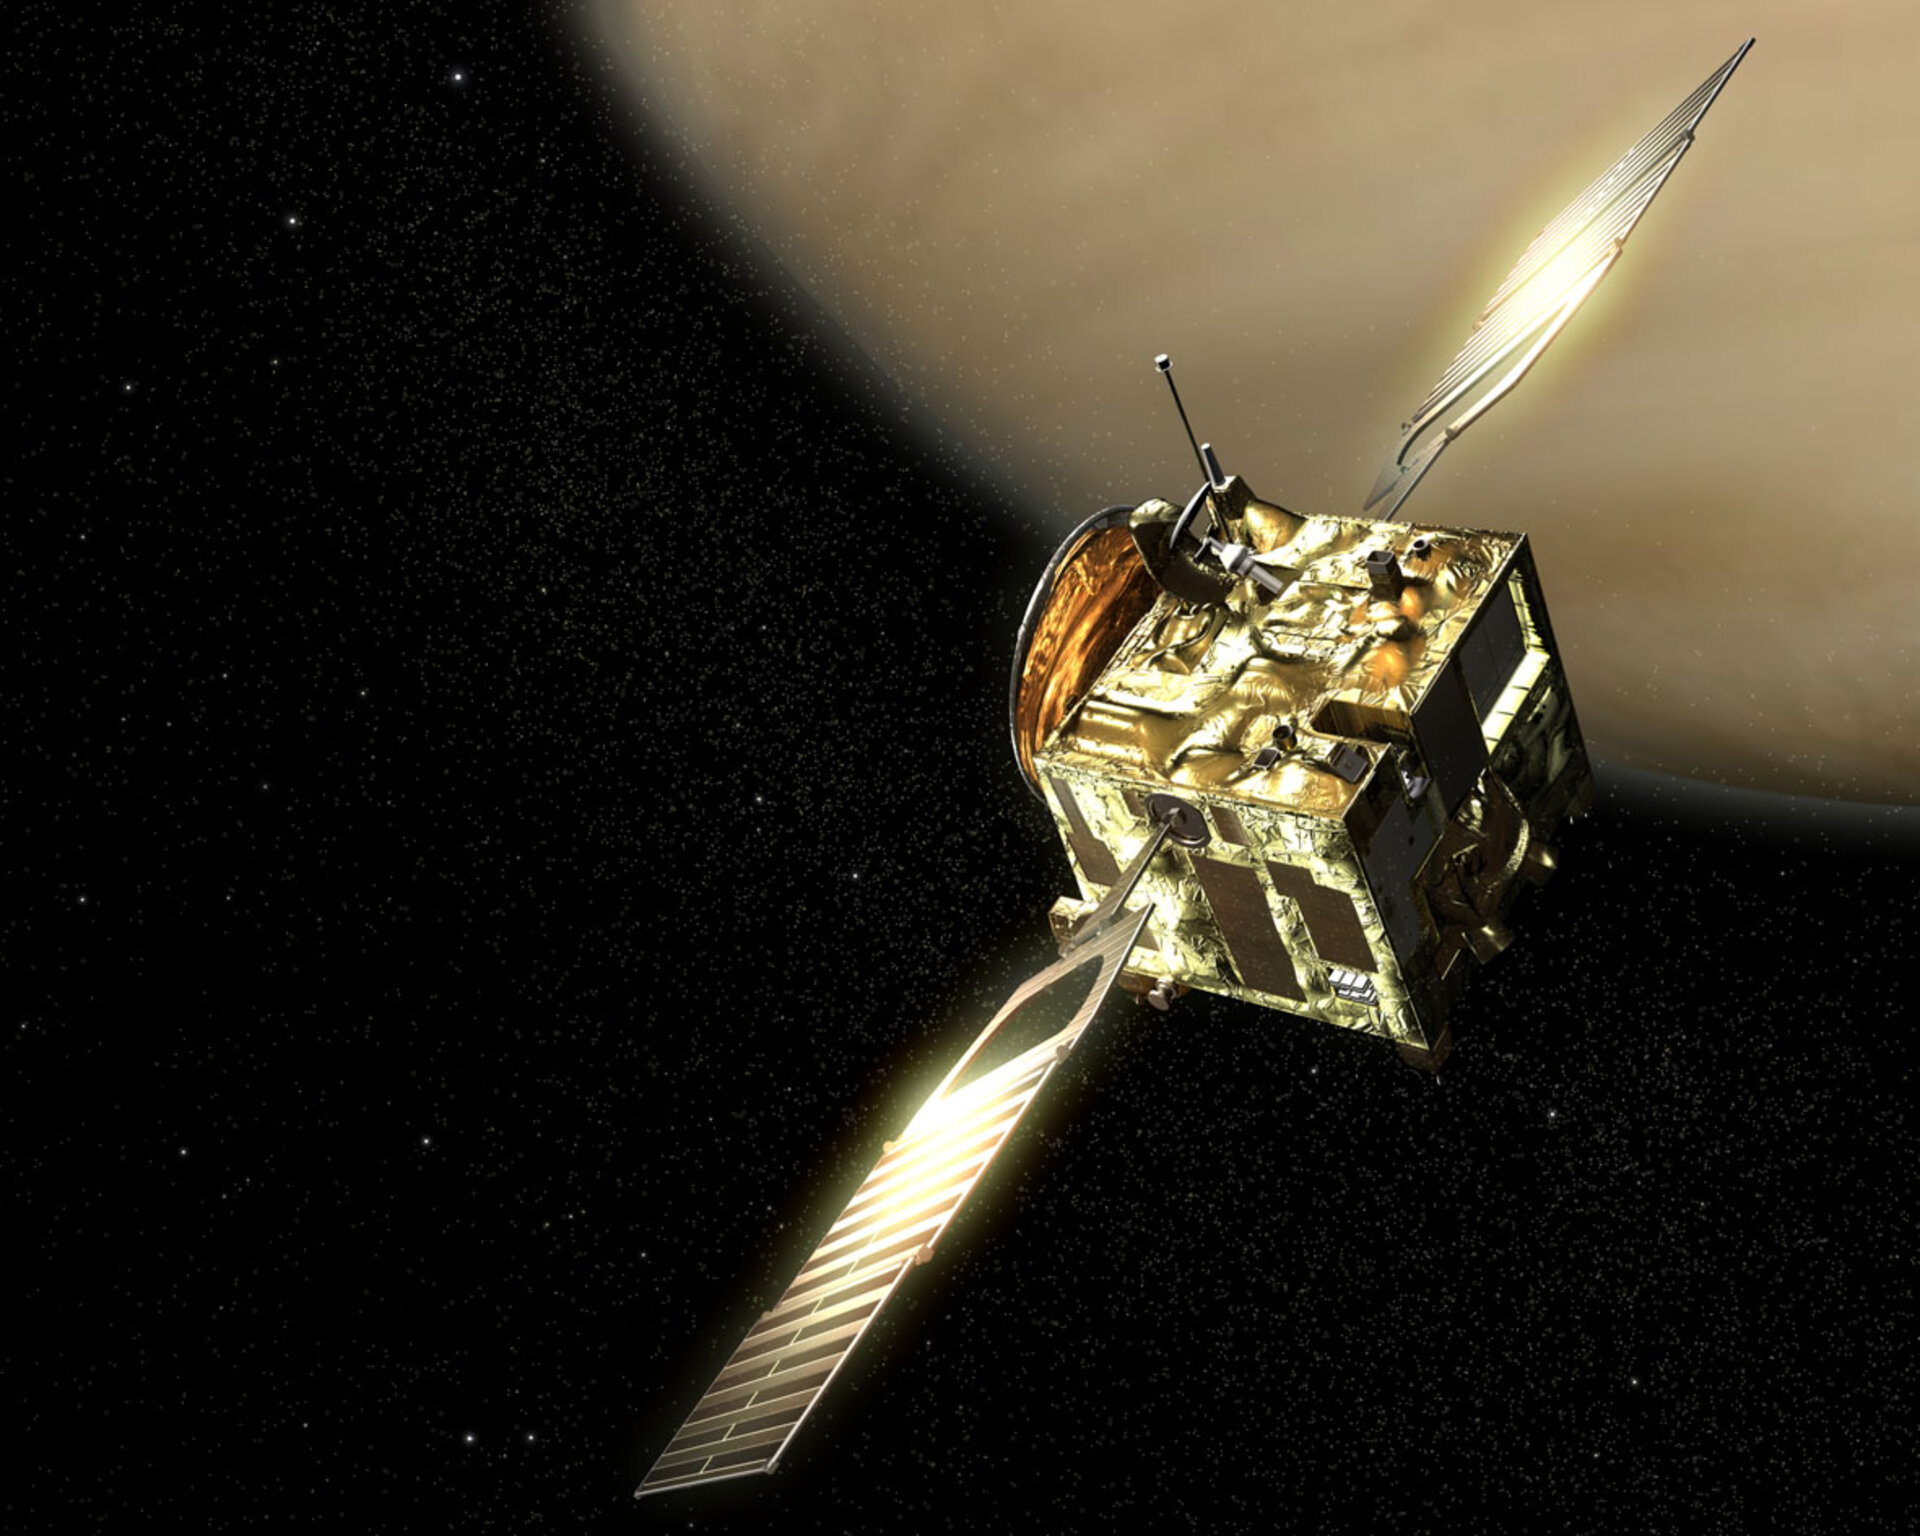 Venus Express ligger i omloppsbana runt Venus och blickar ner i atmosfären med hjälp av olika instrument